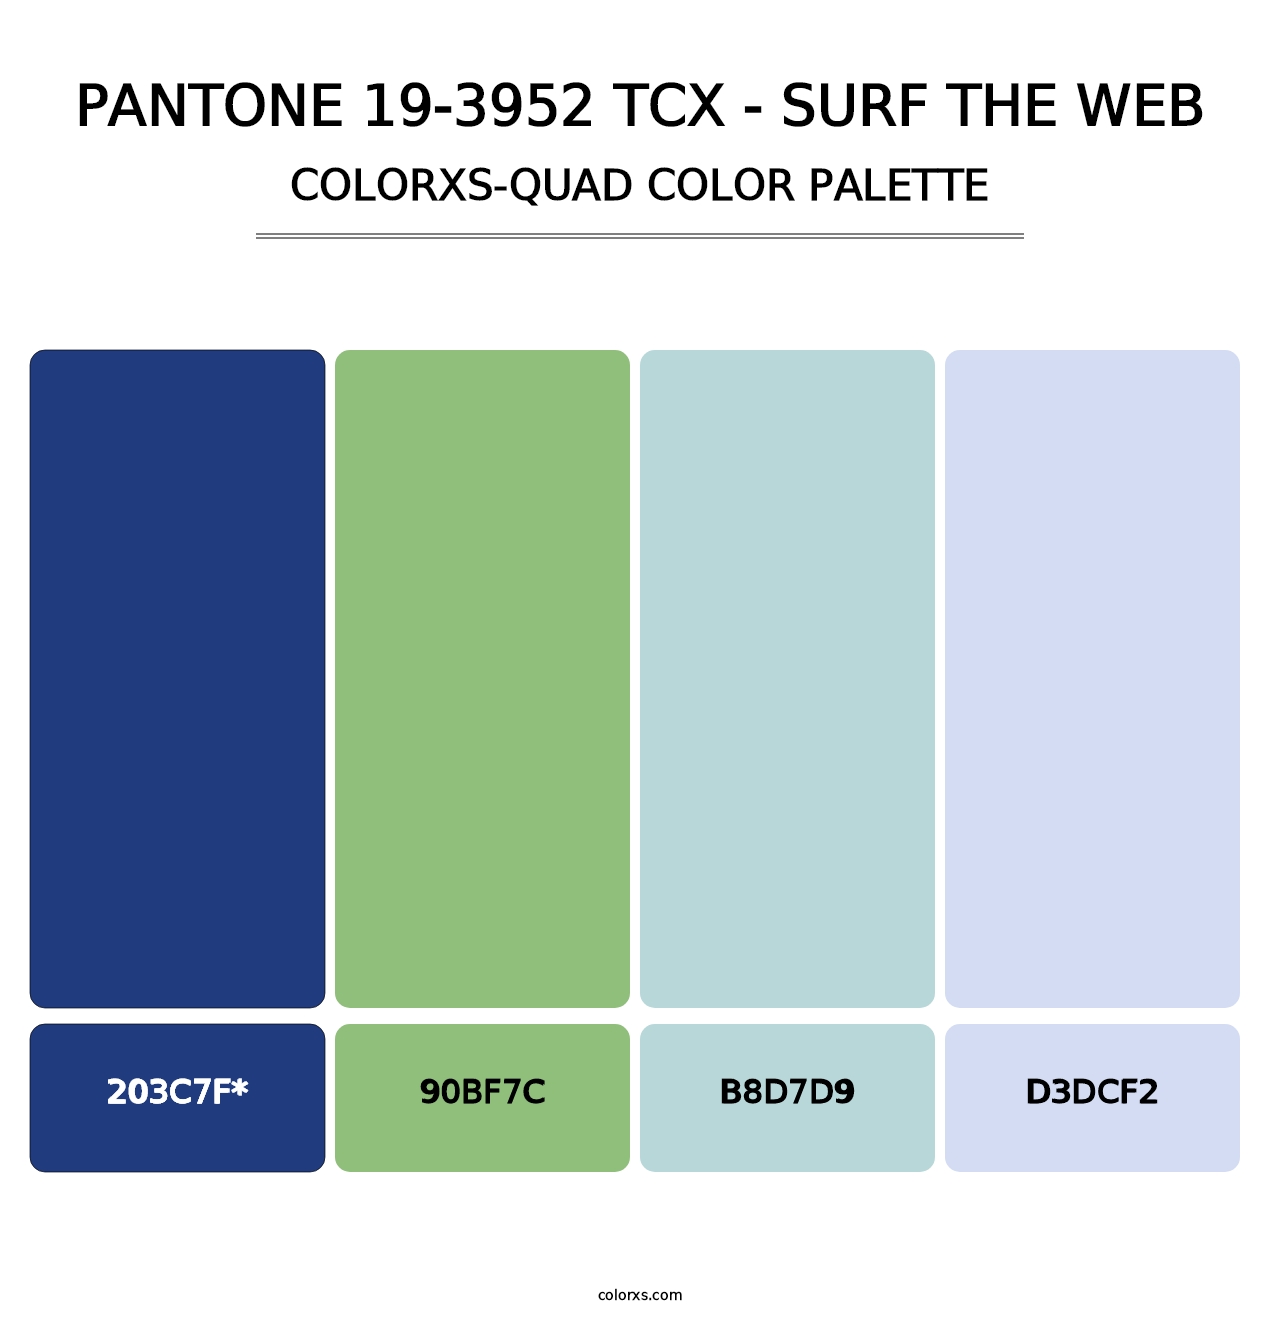 PANTONE 19-3952 TCX - Surf the Web - Colorxs Quad Palette